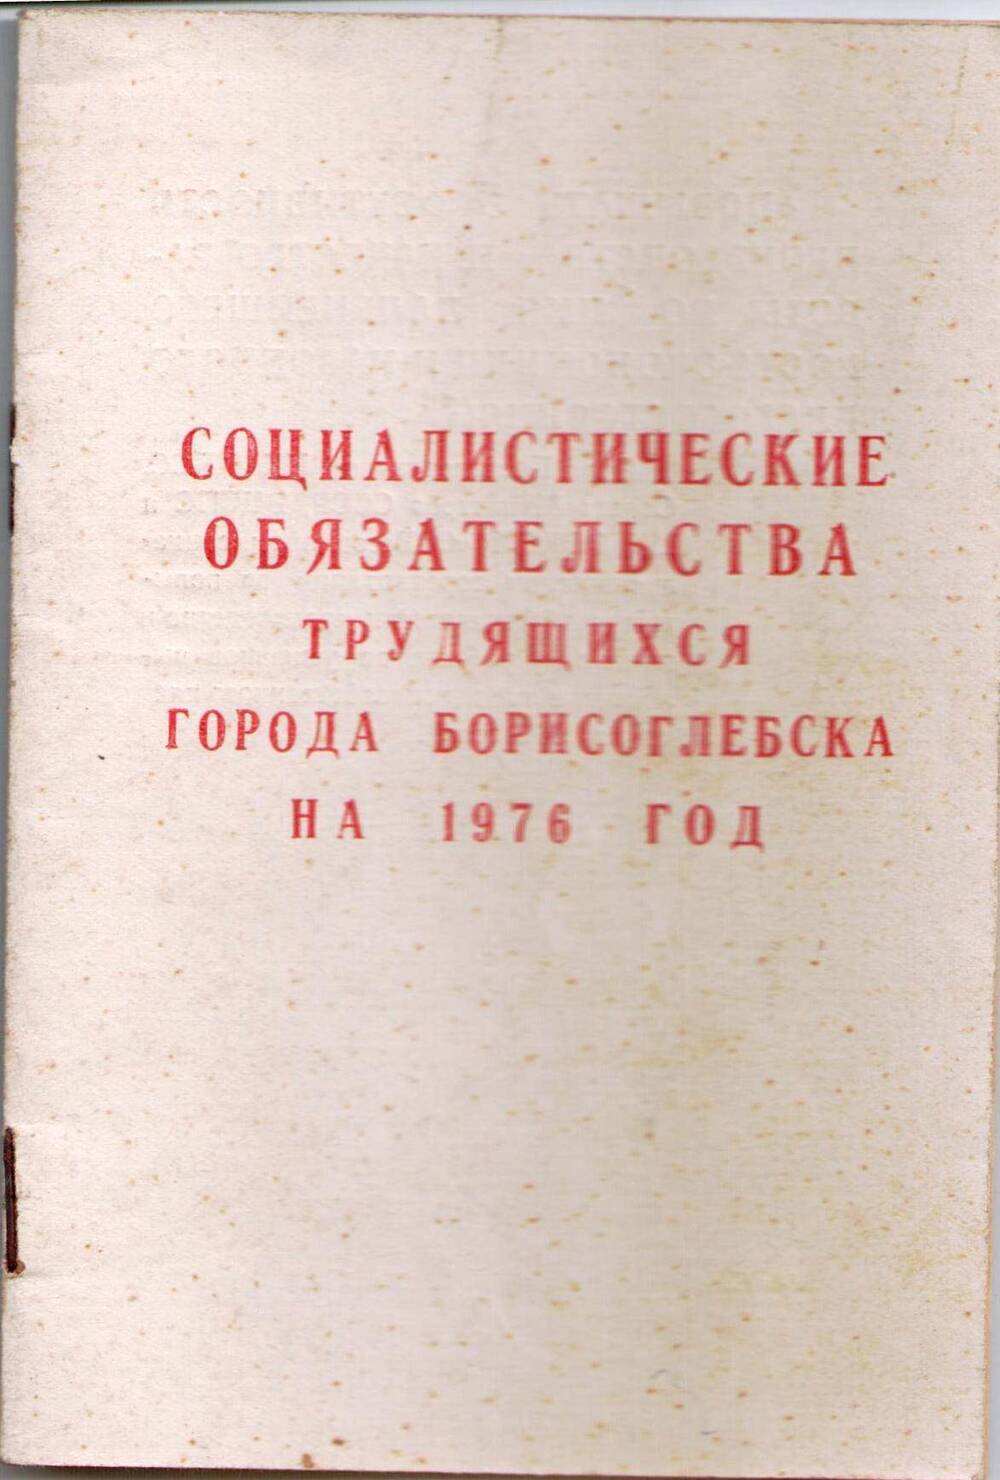 Брошюра Социалистические обязательства трудящихся города Борисоглебска на 1976 год.